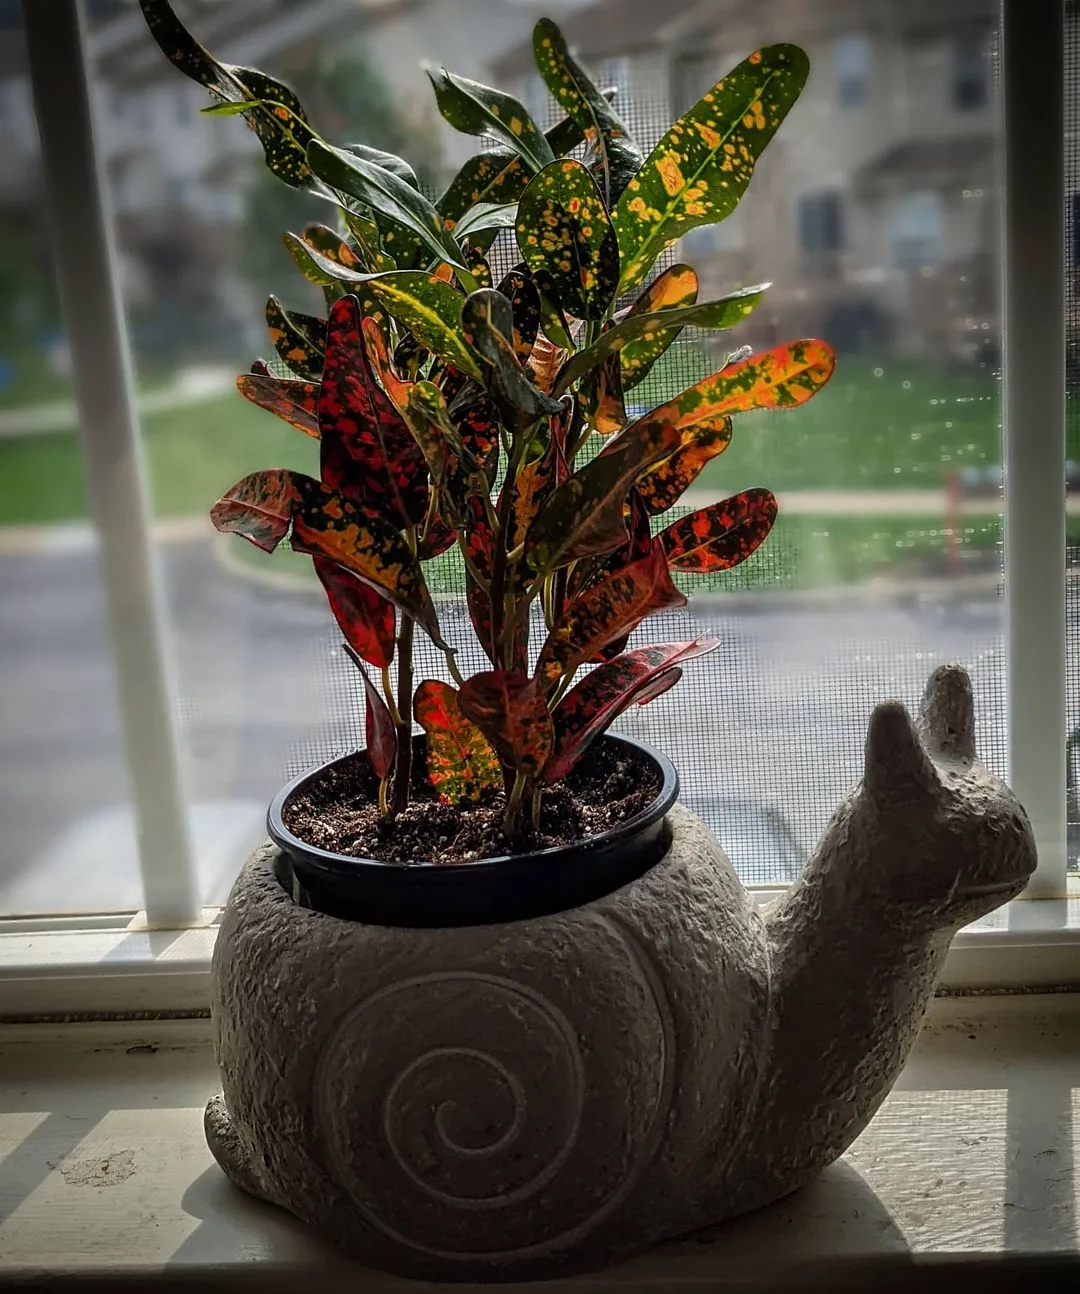 Bush On Fire in a beautiful pot by the window